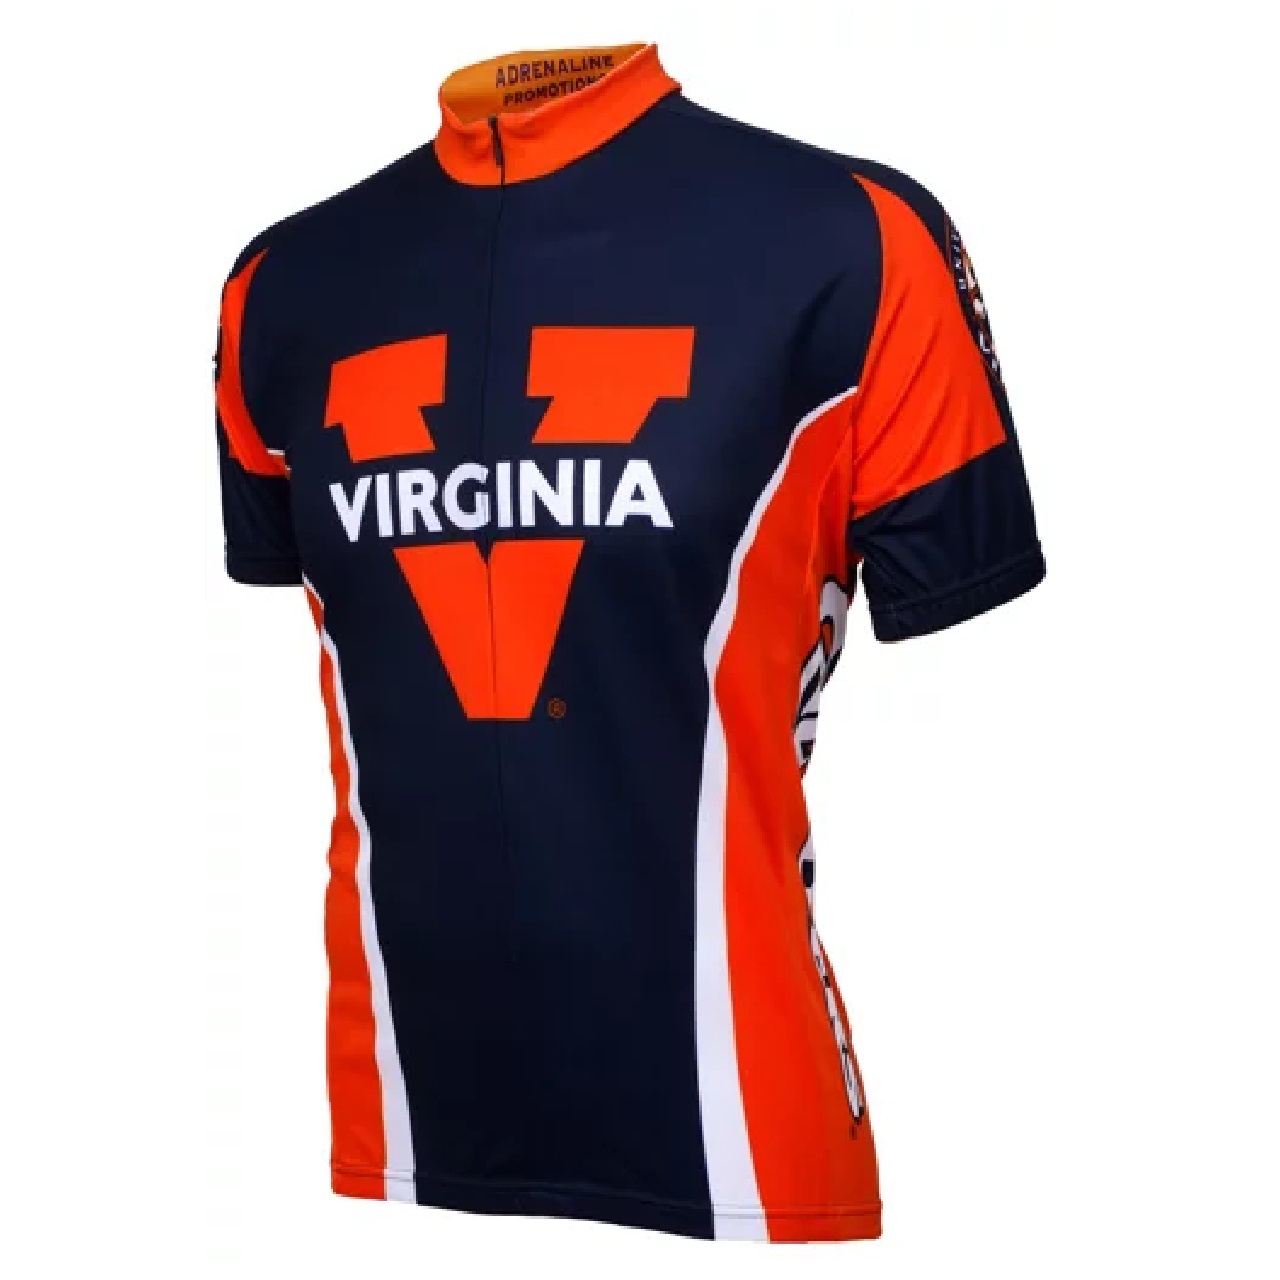 Adrenaline Promo University of Virginia Cavaliers 3/4 zip Men's Cycling Jersey